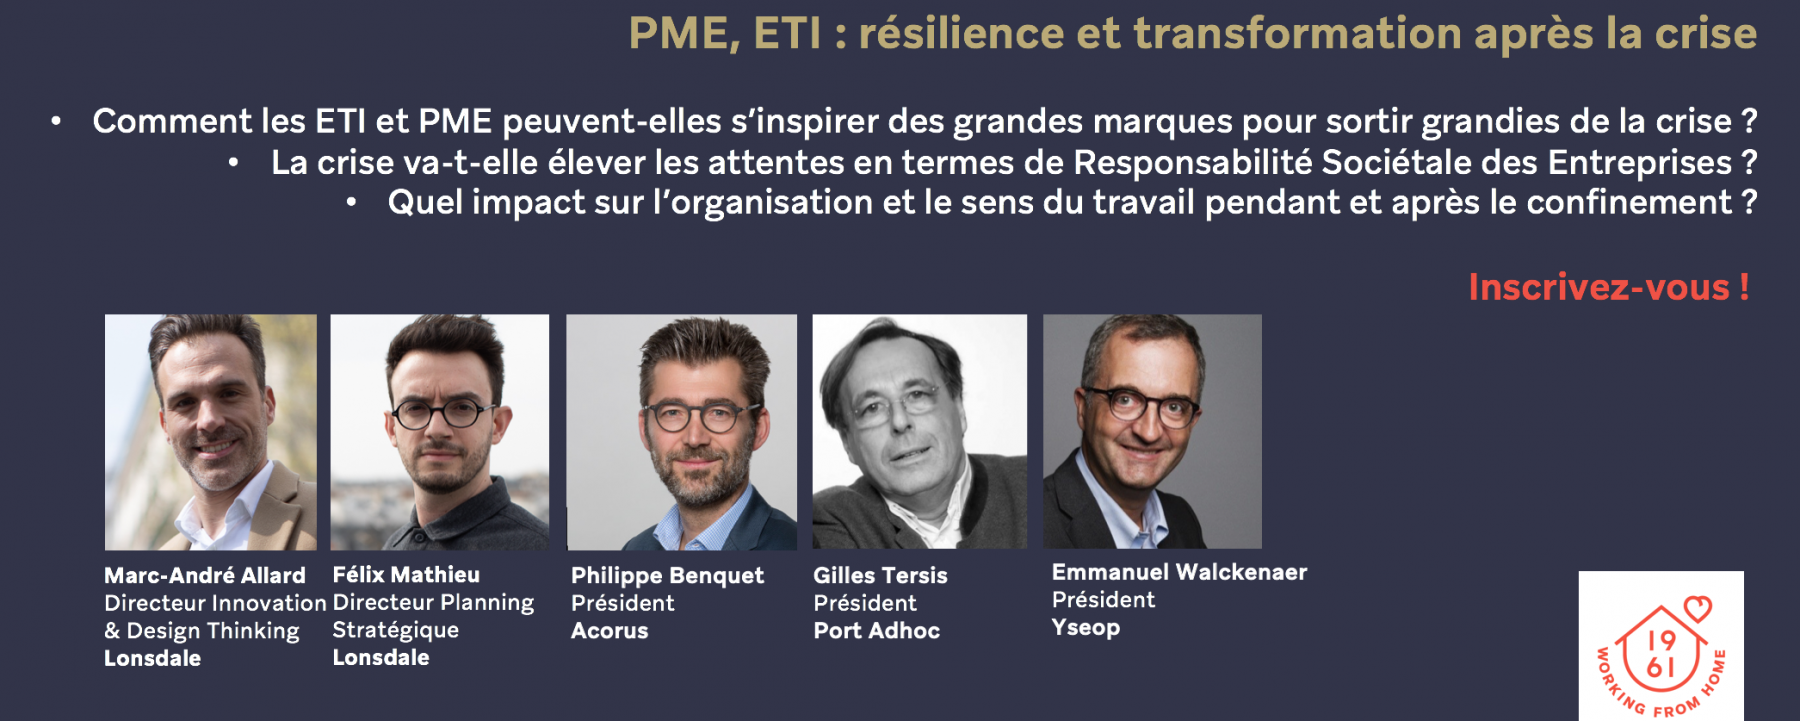 Webinar PME & ETI : résilience et transformation, le 7 mai 2020, organisé par Lonsdale 